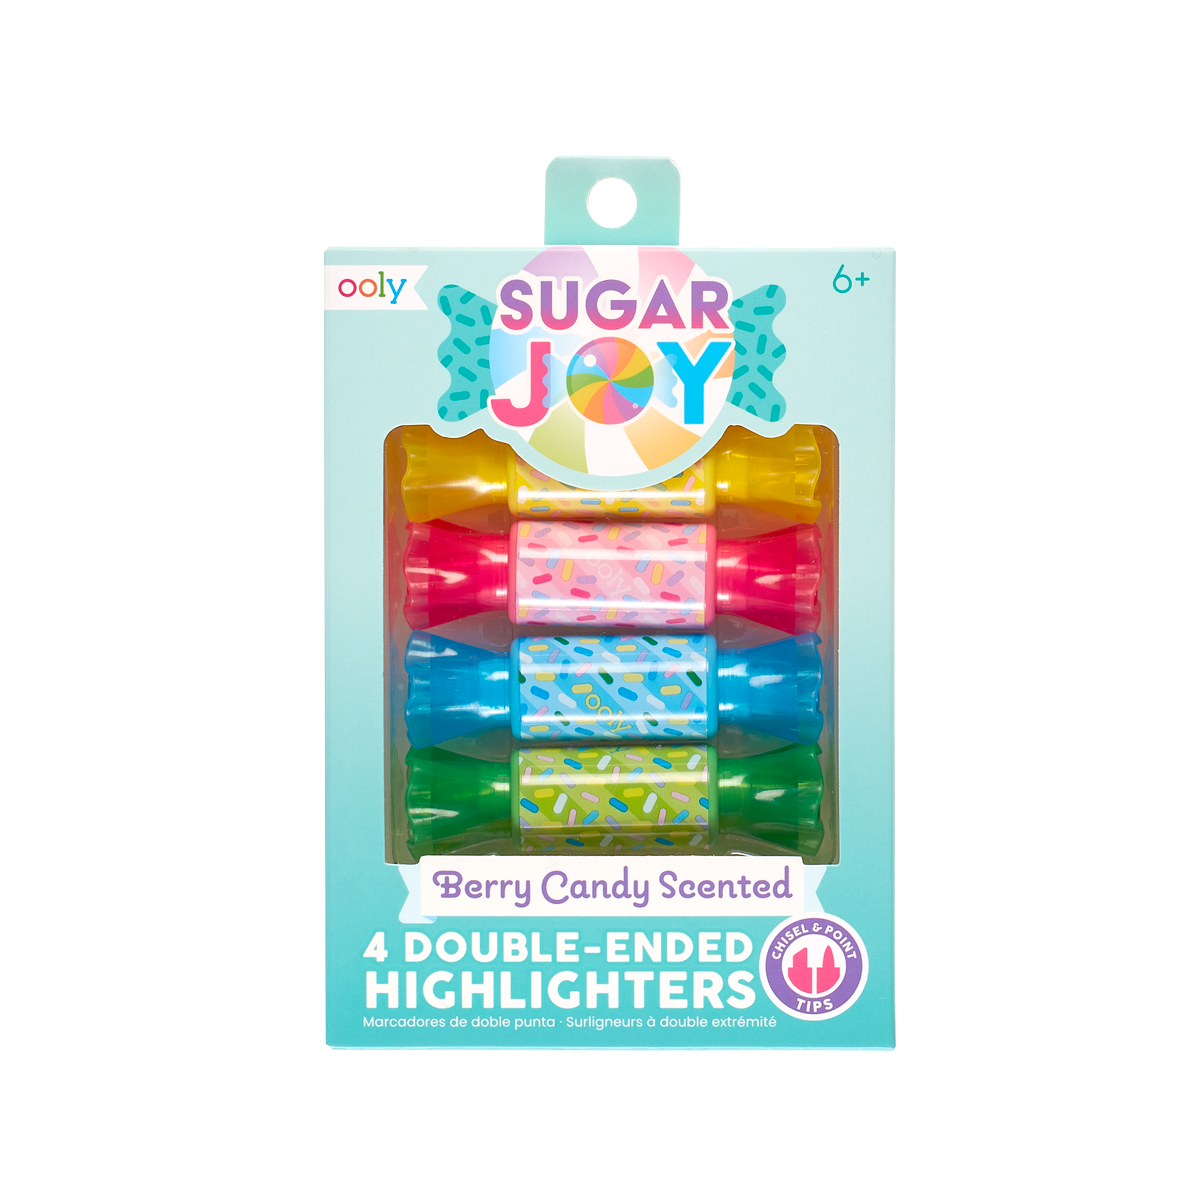 OOLY Sugar Joy Highlighters set of 4 in packaging